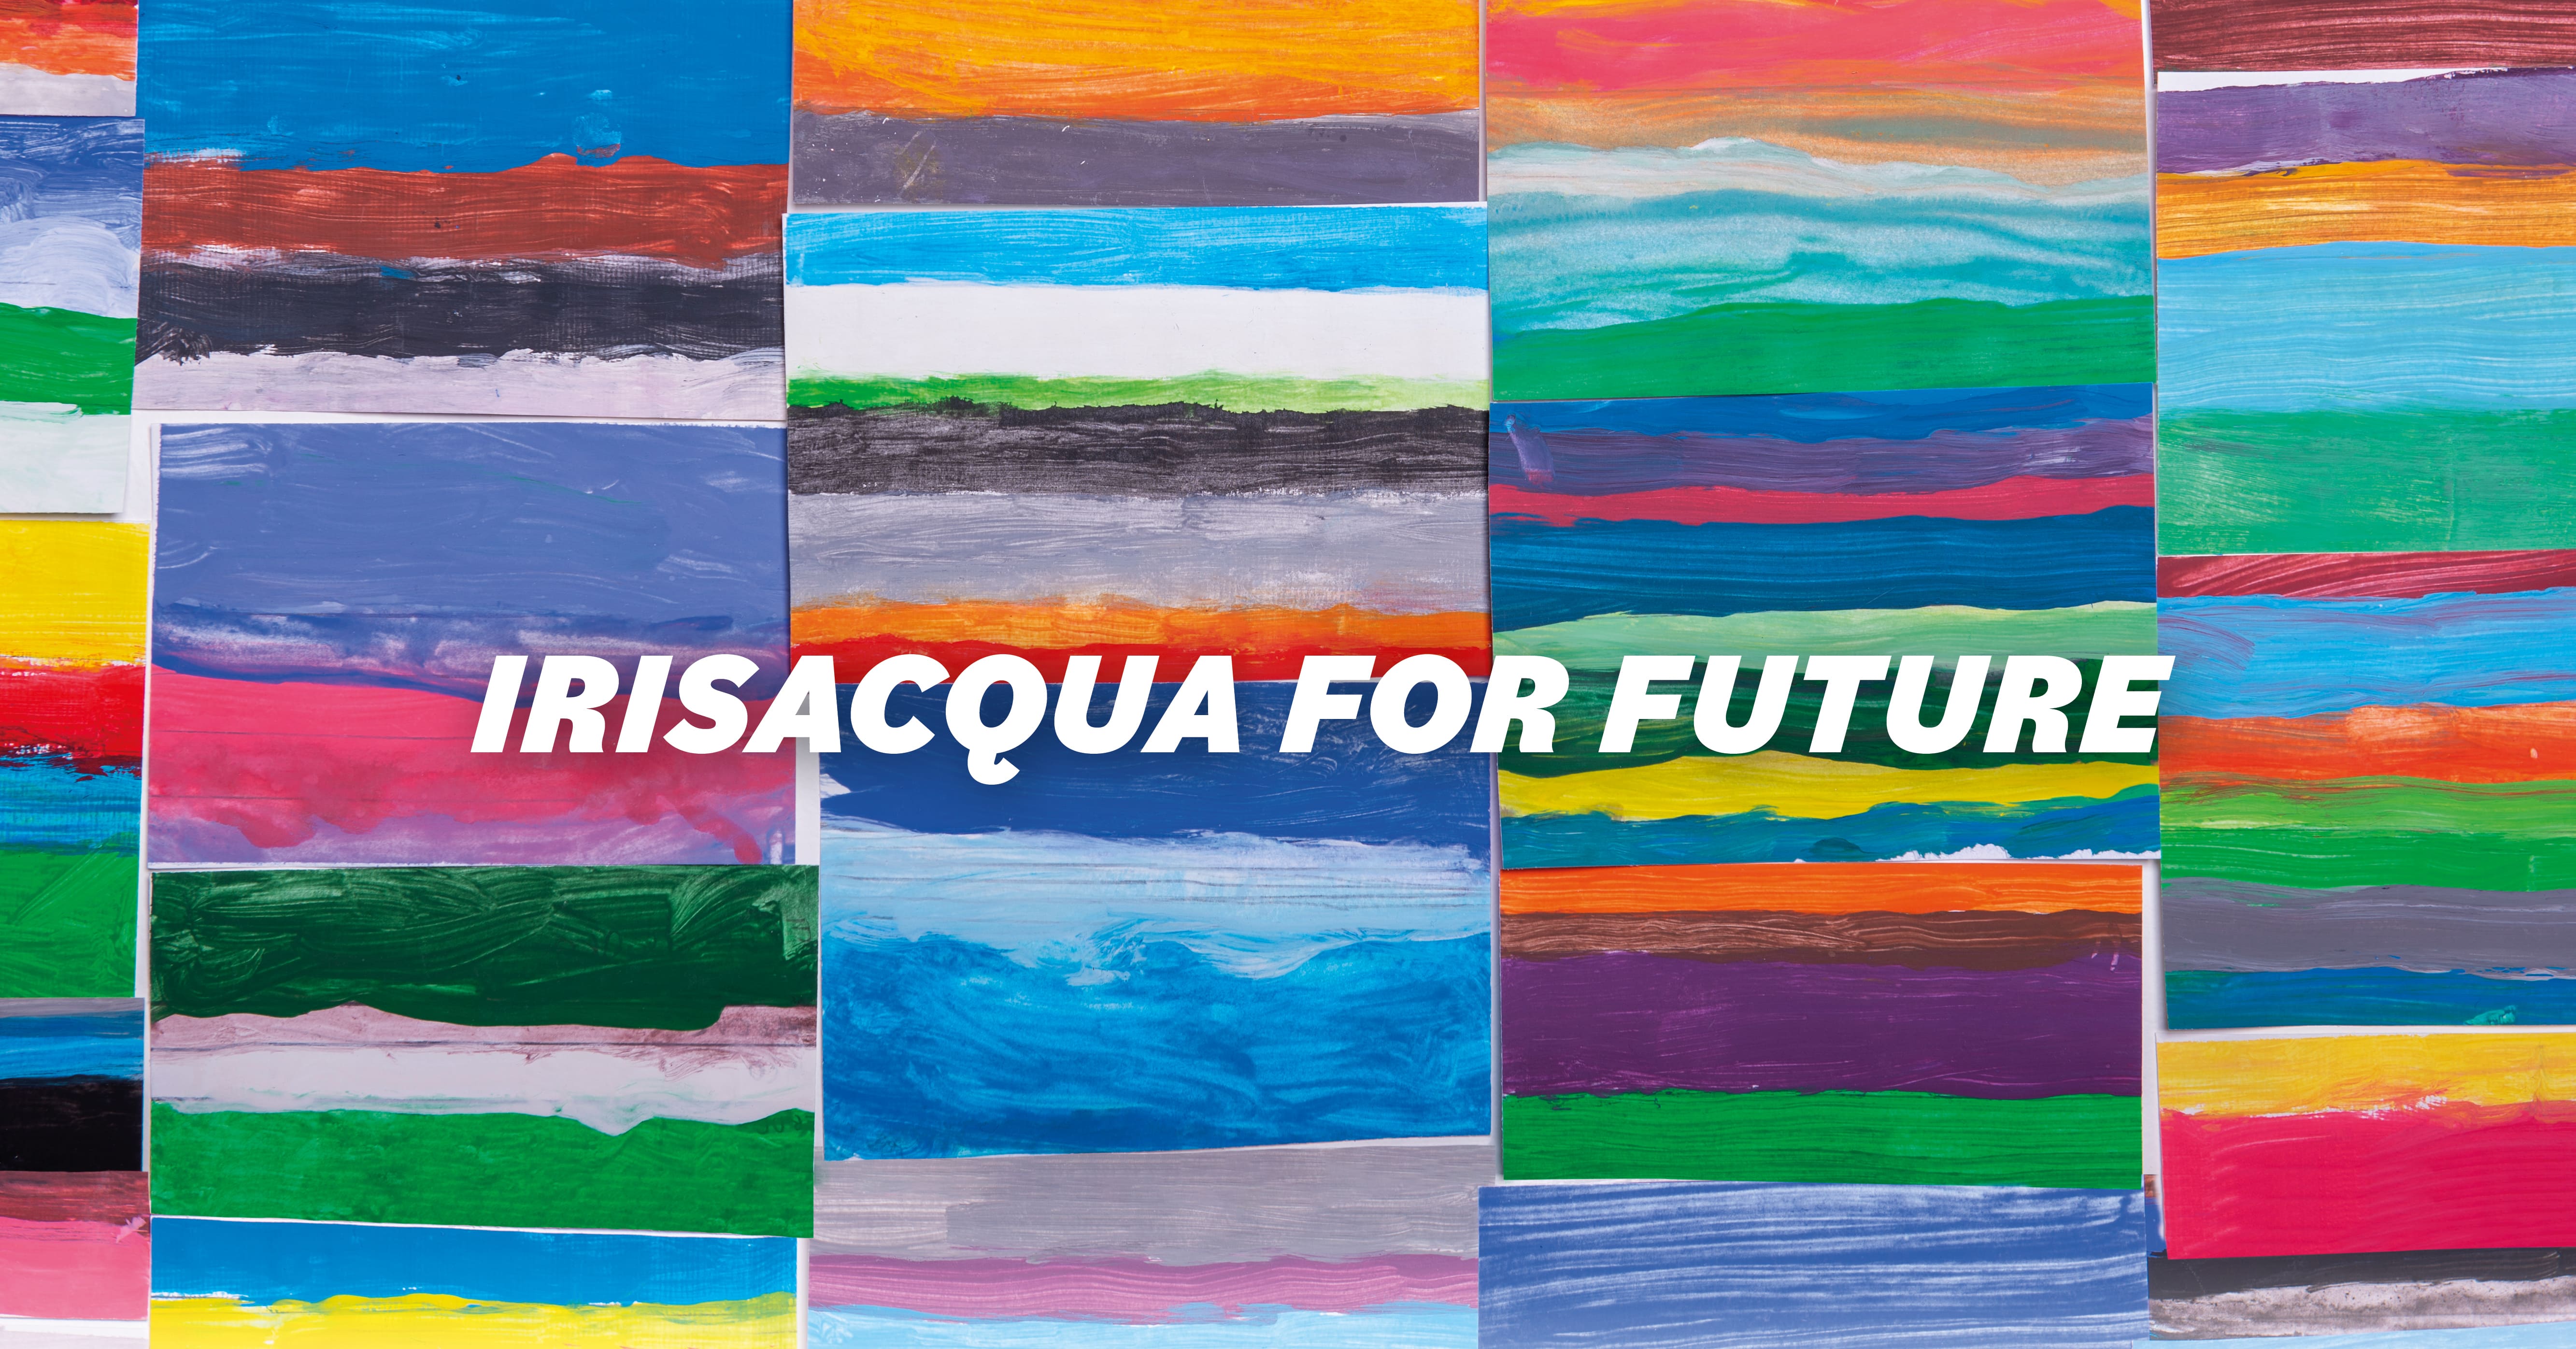 Irisacqua for future